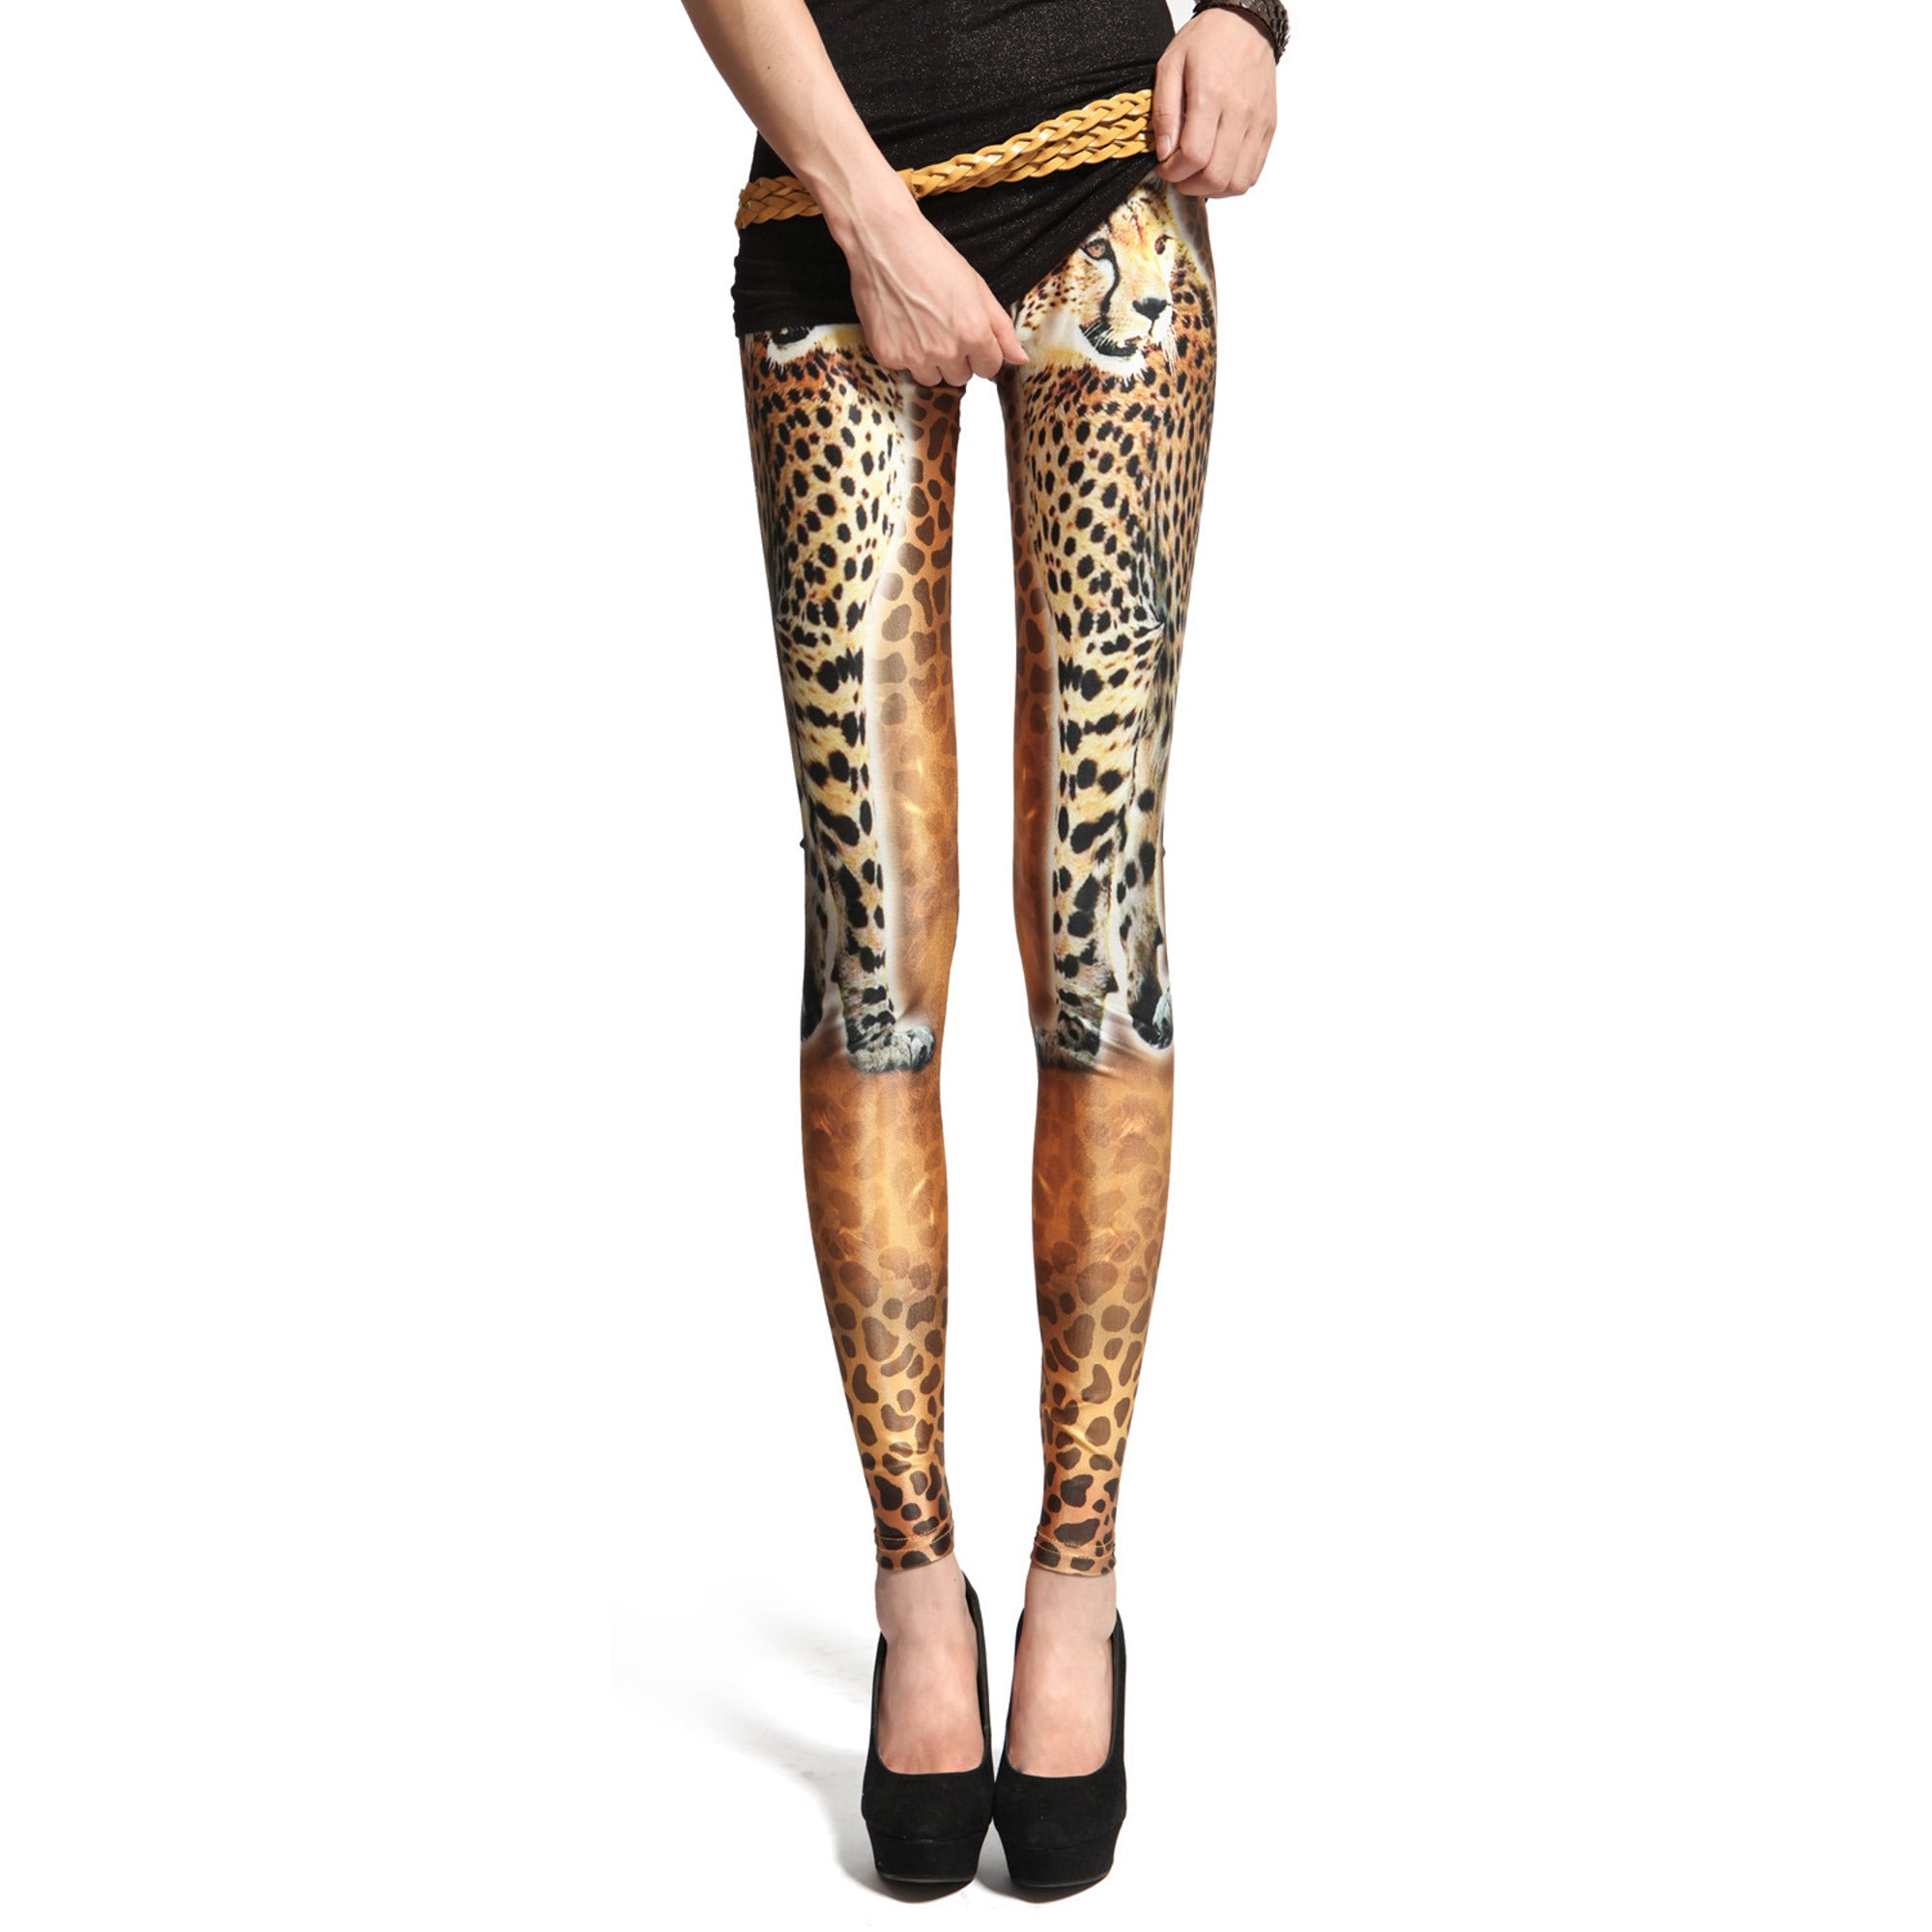 Rubberfashion Glanz Leggings Damen - sexy glänzende Leggins mit Leopard Muster 80er Jahre metallic für Frauen